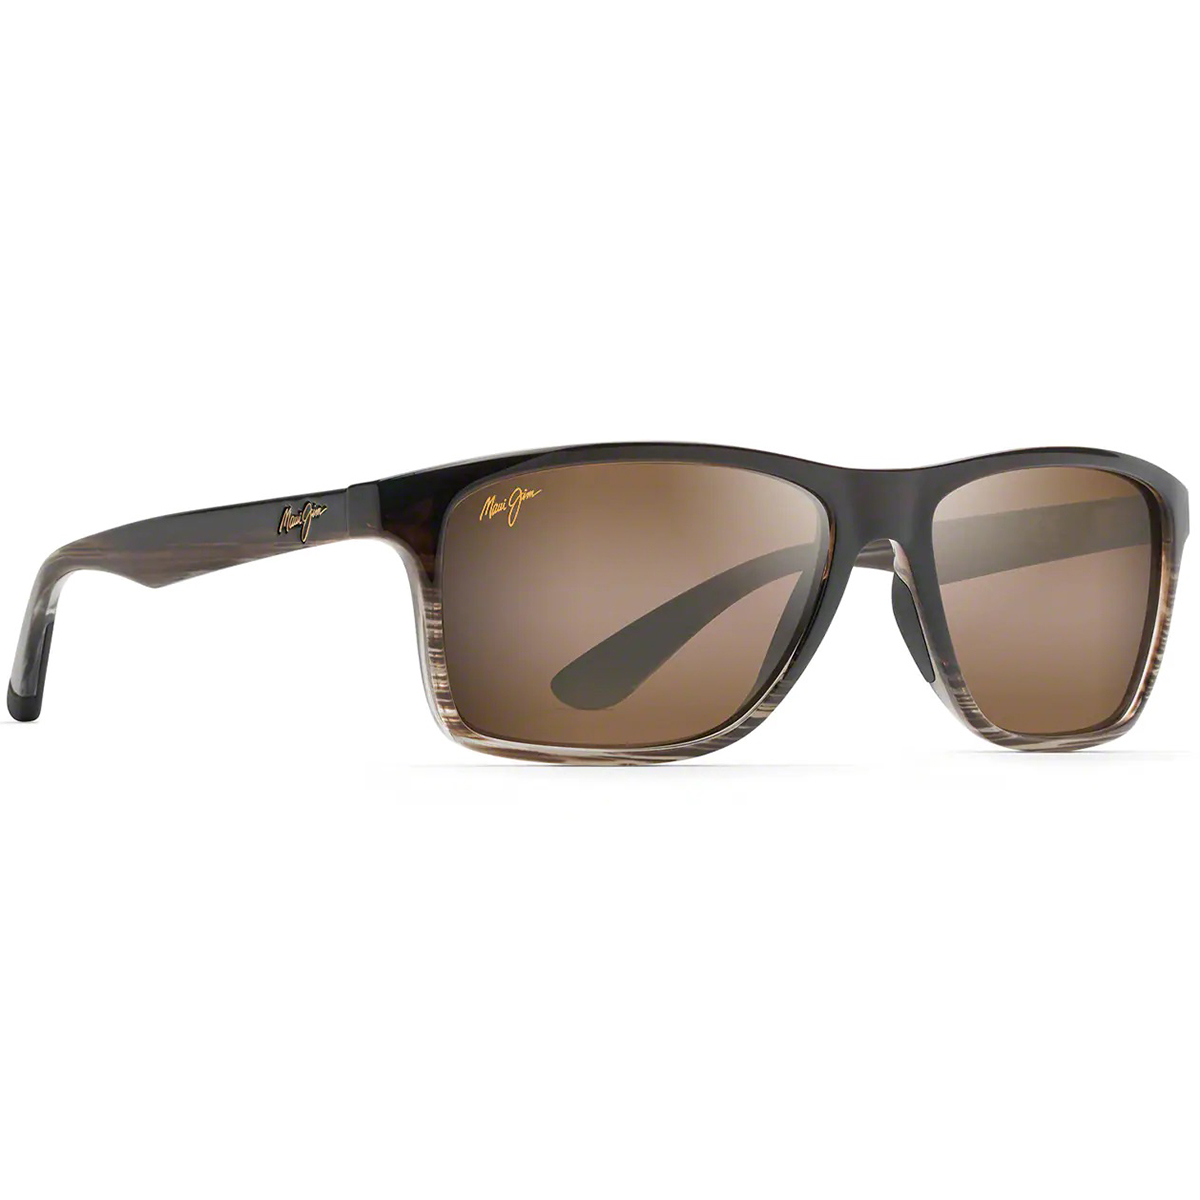 Maui Jim Onshore Polarized Rectangular Sunglasses